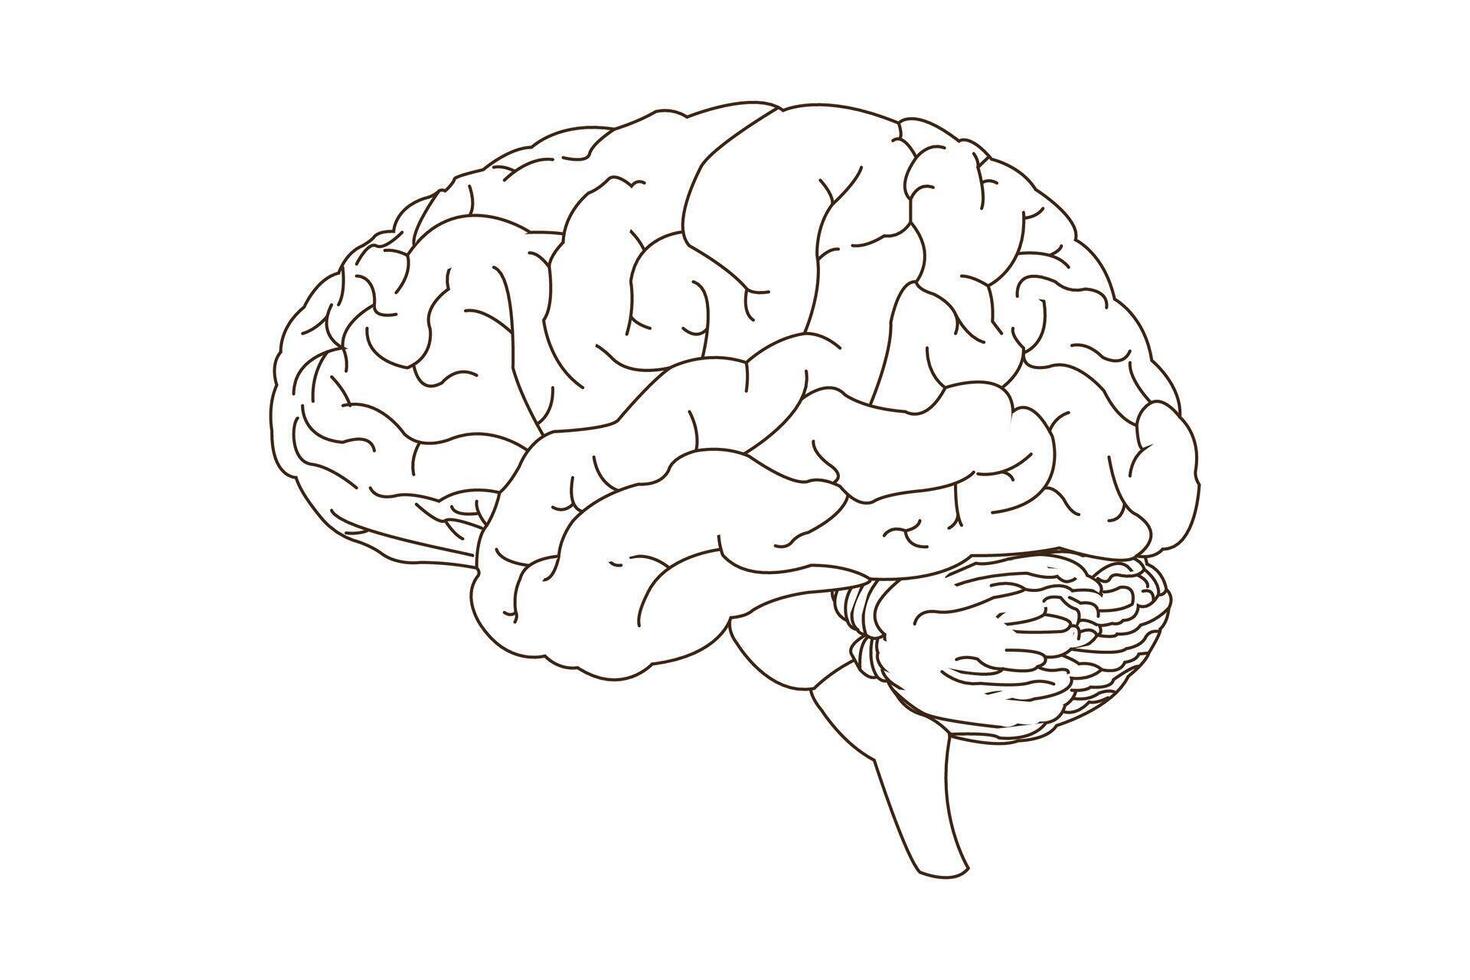 menselijk brein, lijn kunst vector illustratie. kant visie van hersenen met grote hersenen, hersenstam en cerebellum naar studie anatomie, neurologie. eps 10